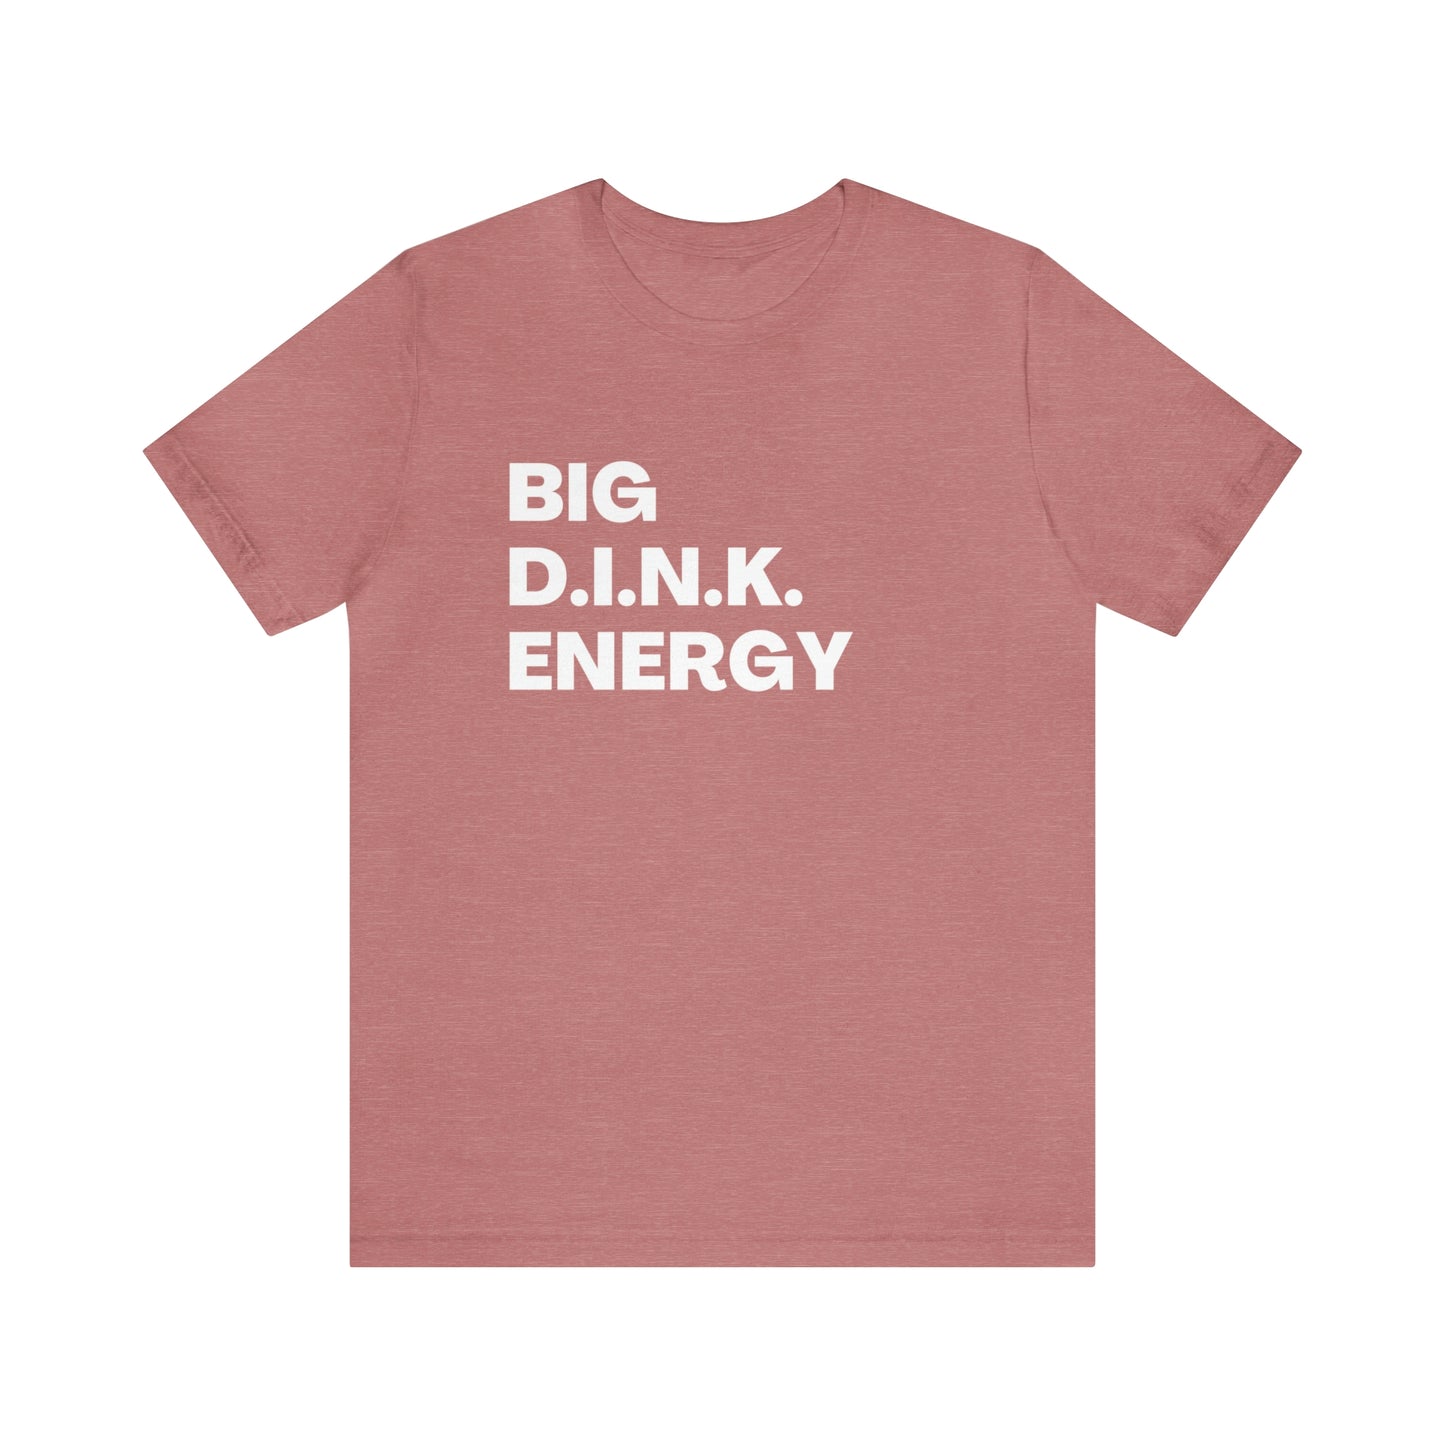 Big D.I.N.K. Energy